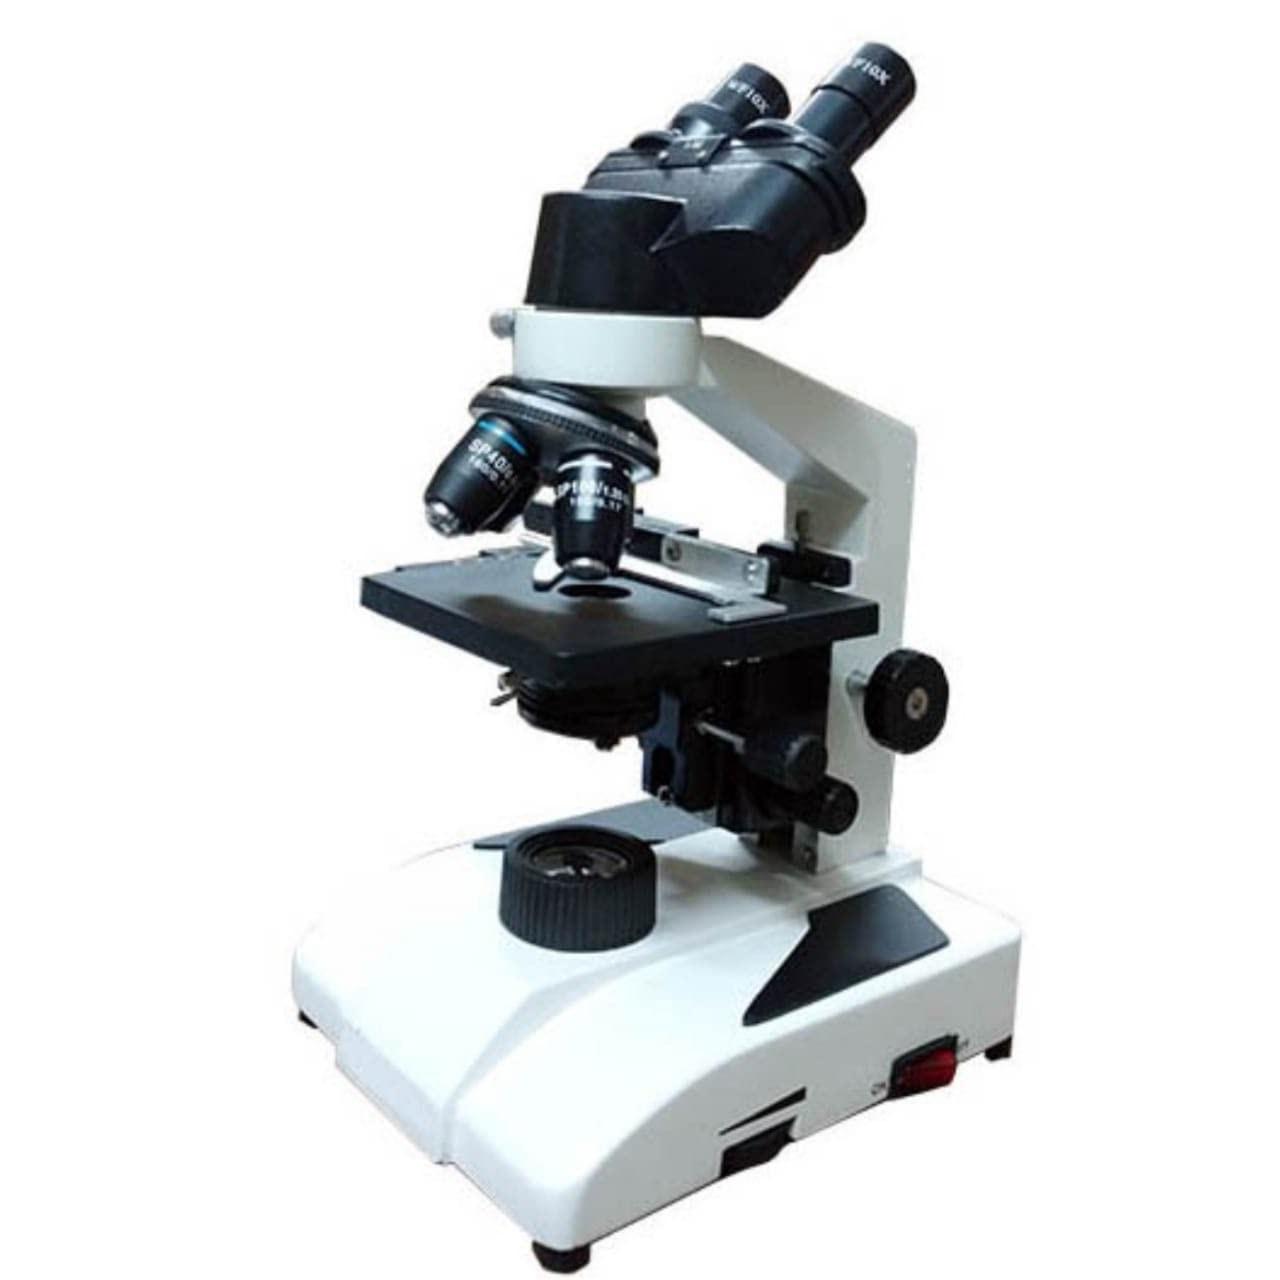 High School Microscope - Focusing: Coaxial; Binocular Head; Objectives: 4X, 10X, 40X (R), 100X (R) Oil